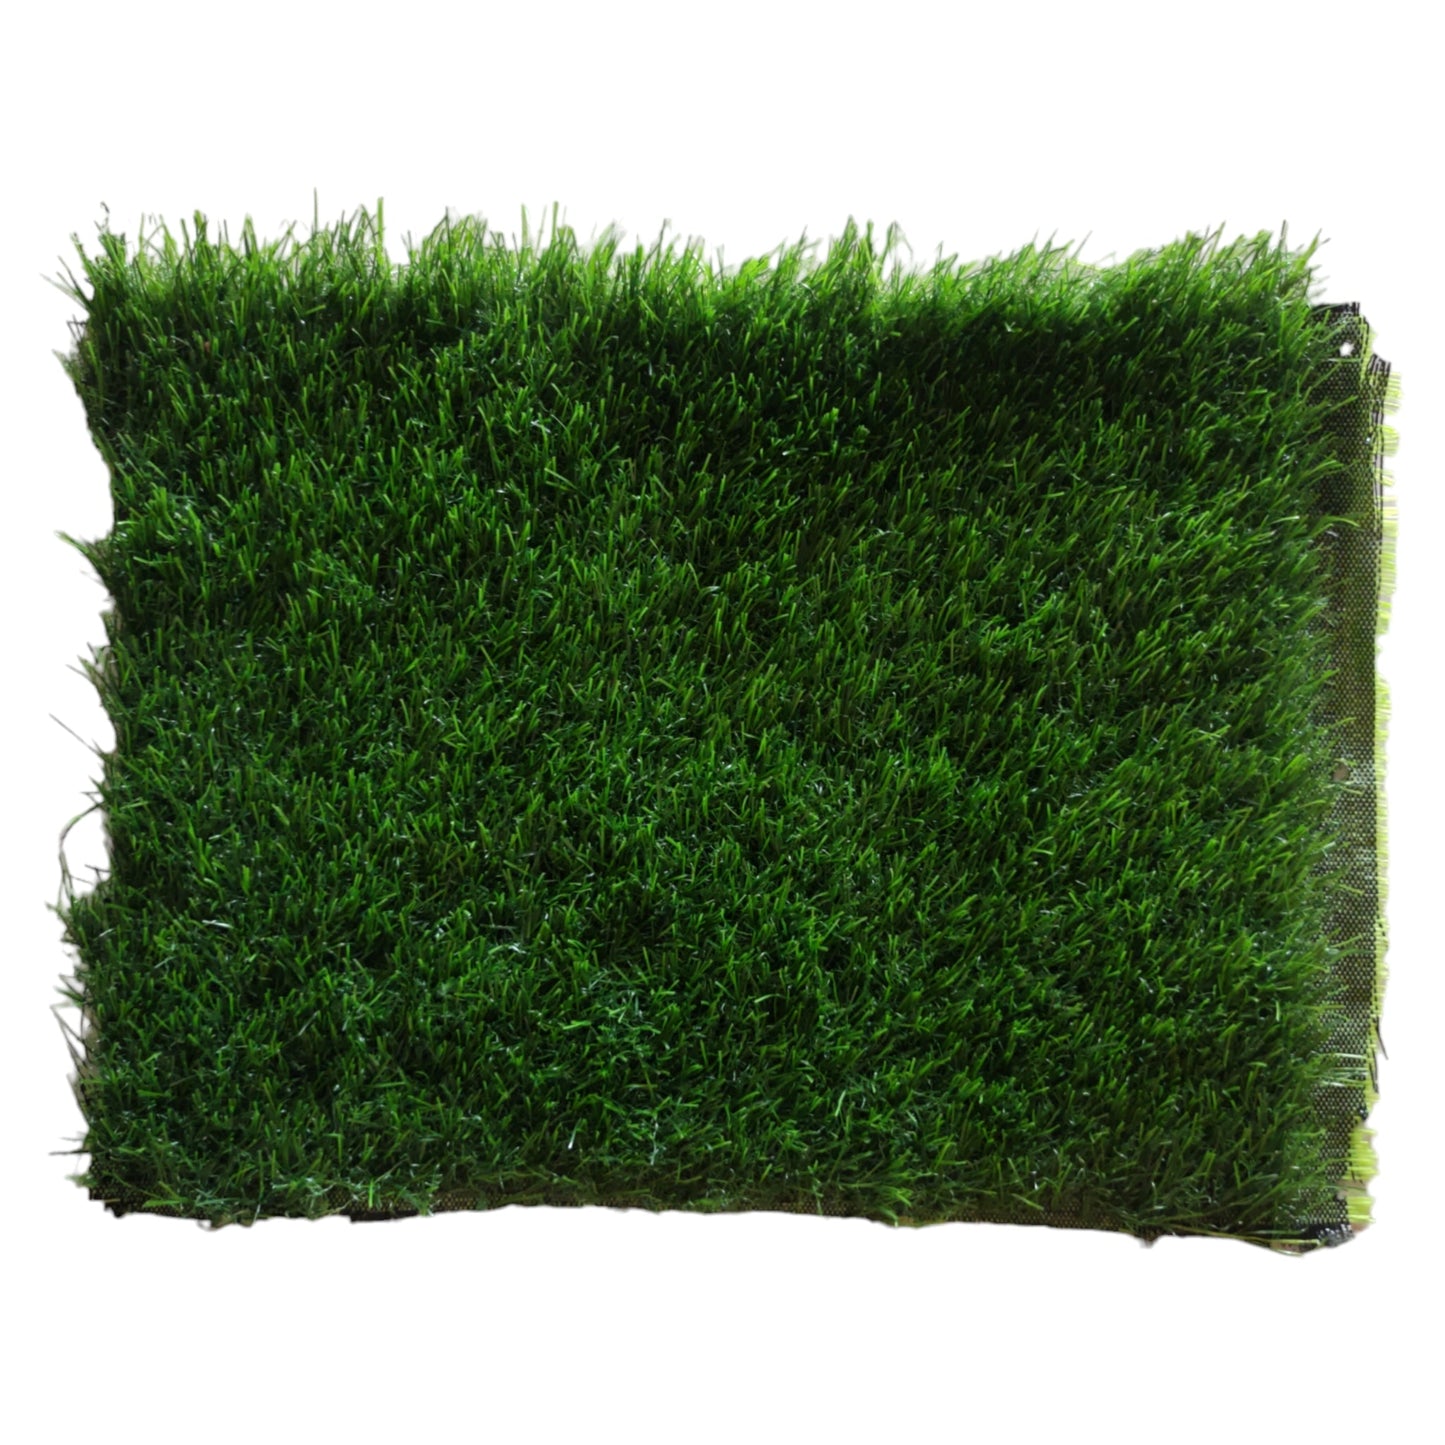 Artificial grass 25MM